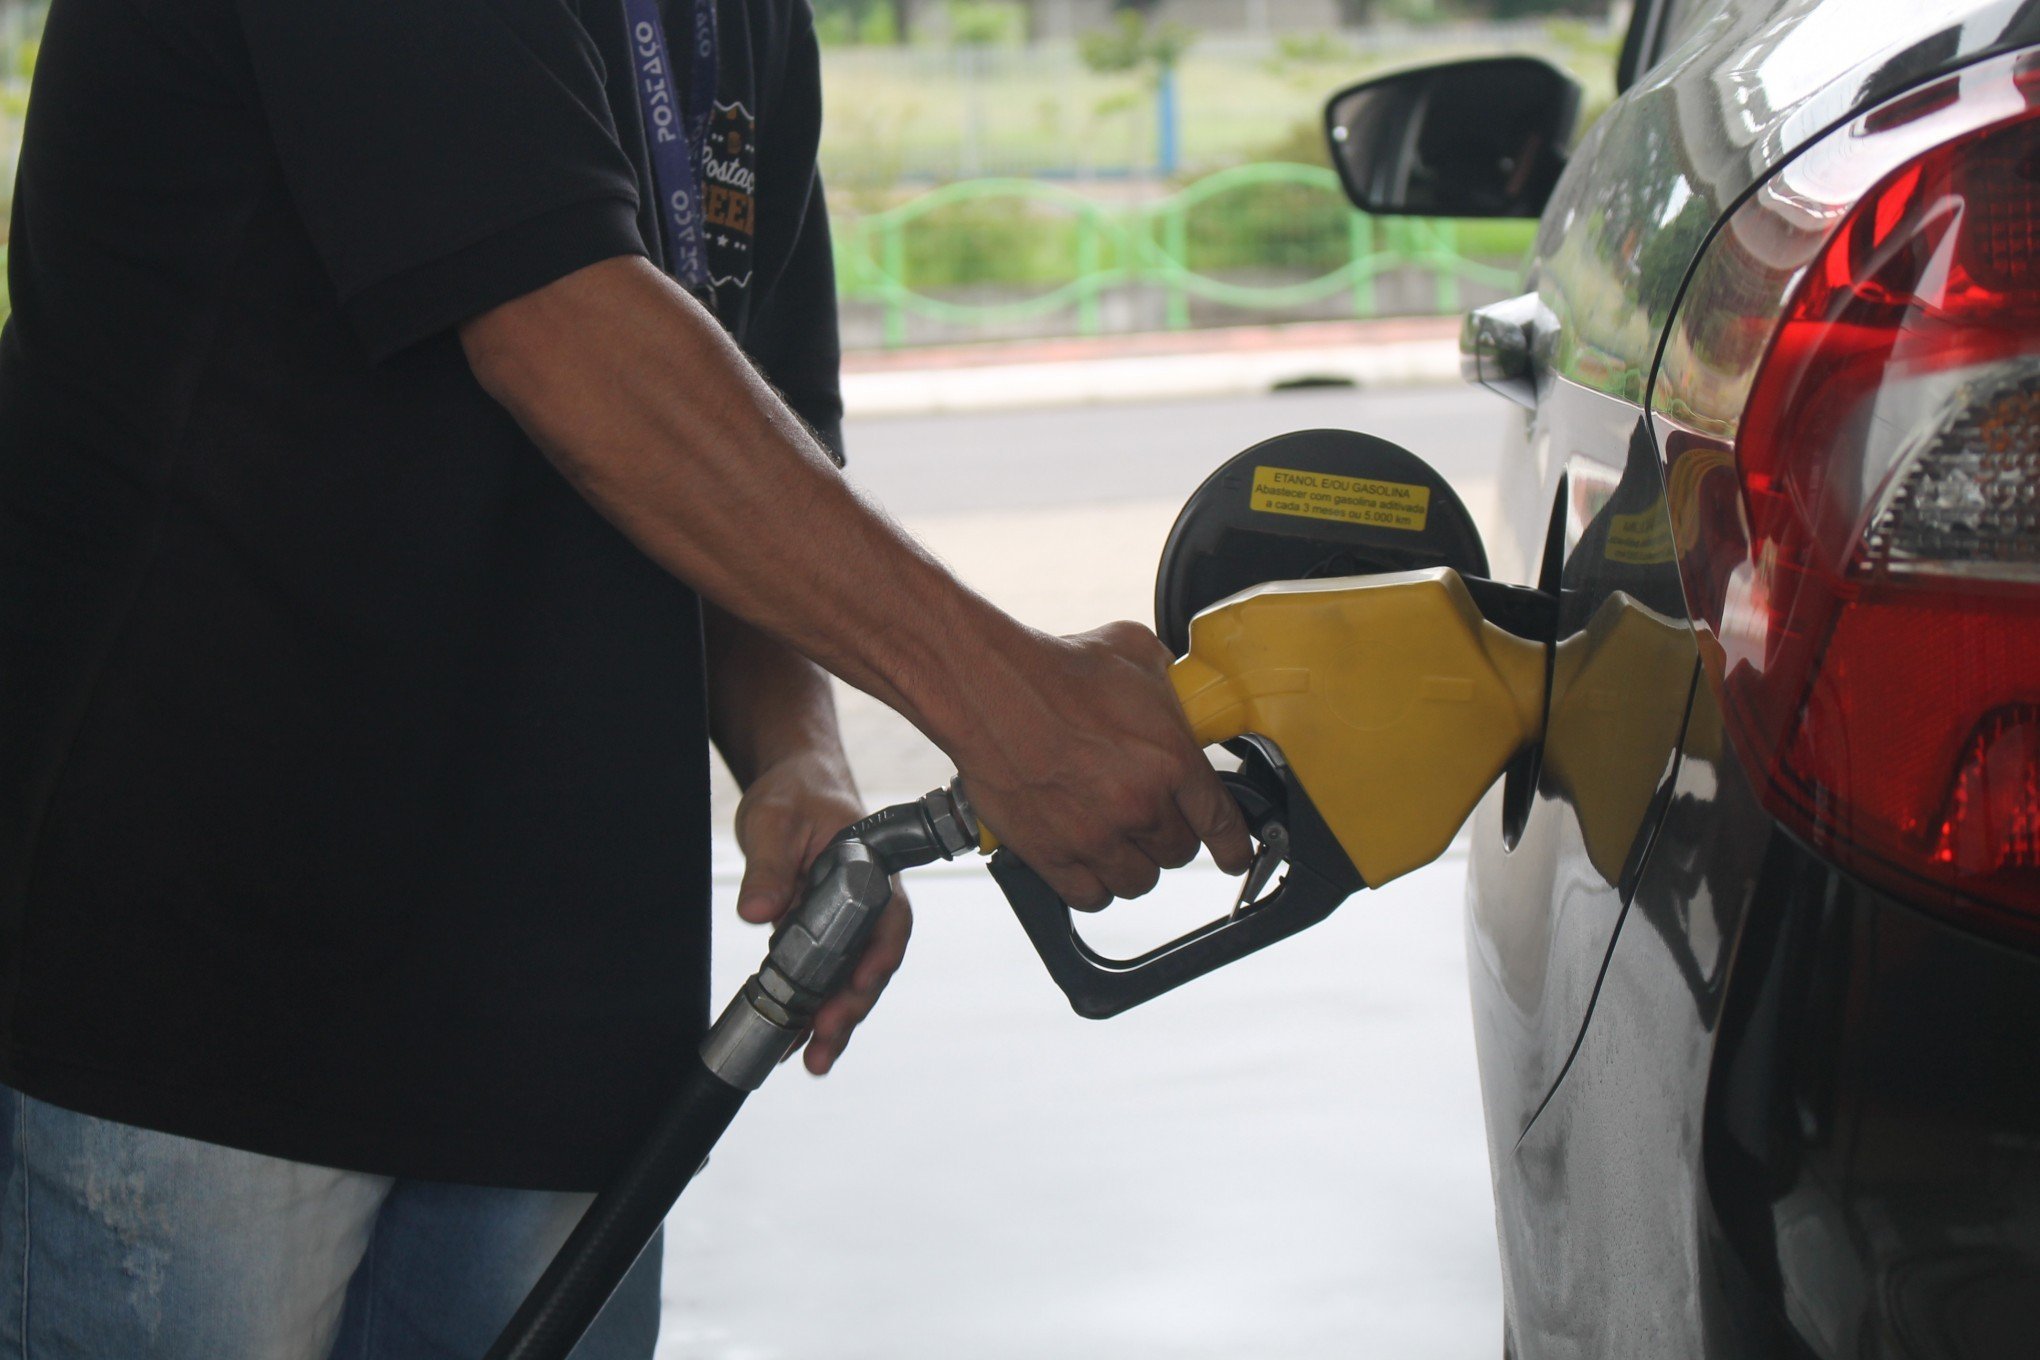 Combustíveis: Gasolina 95 vendida 2,2 cêntimos acima do Preço Eficiente. Gasóleo esteve 1,7 cêntimos mais caro